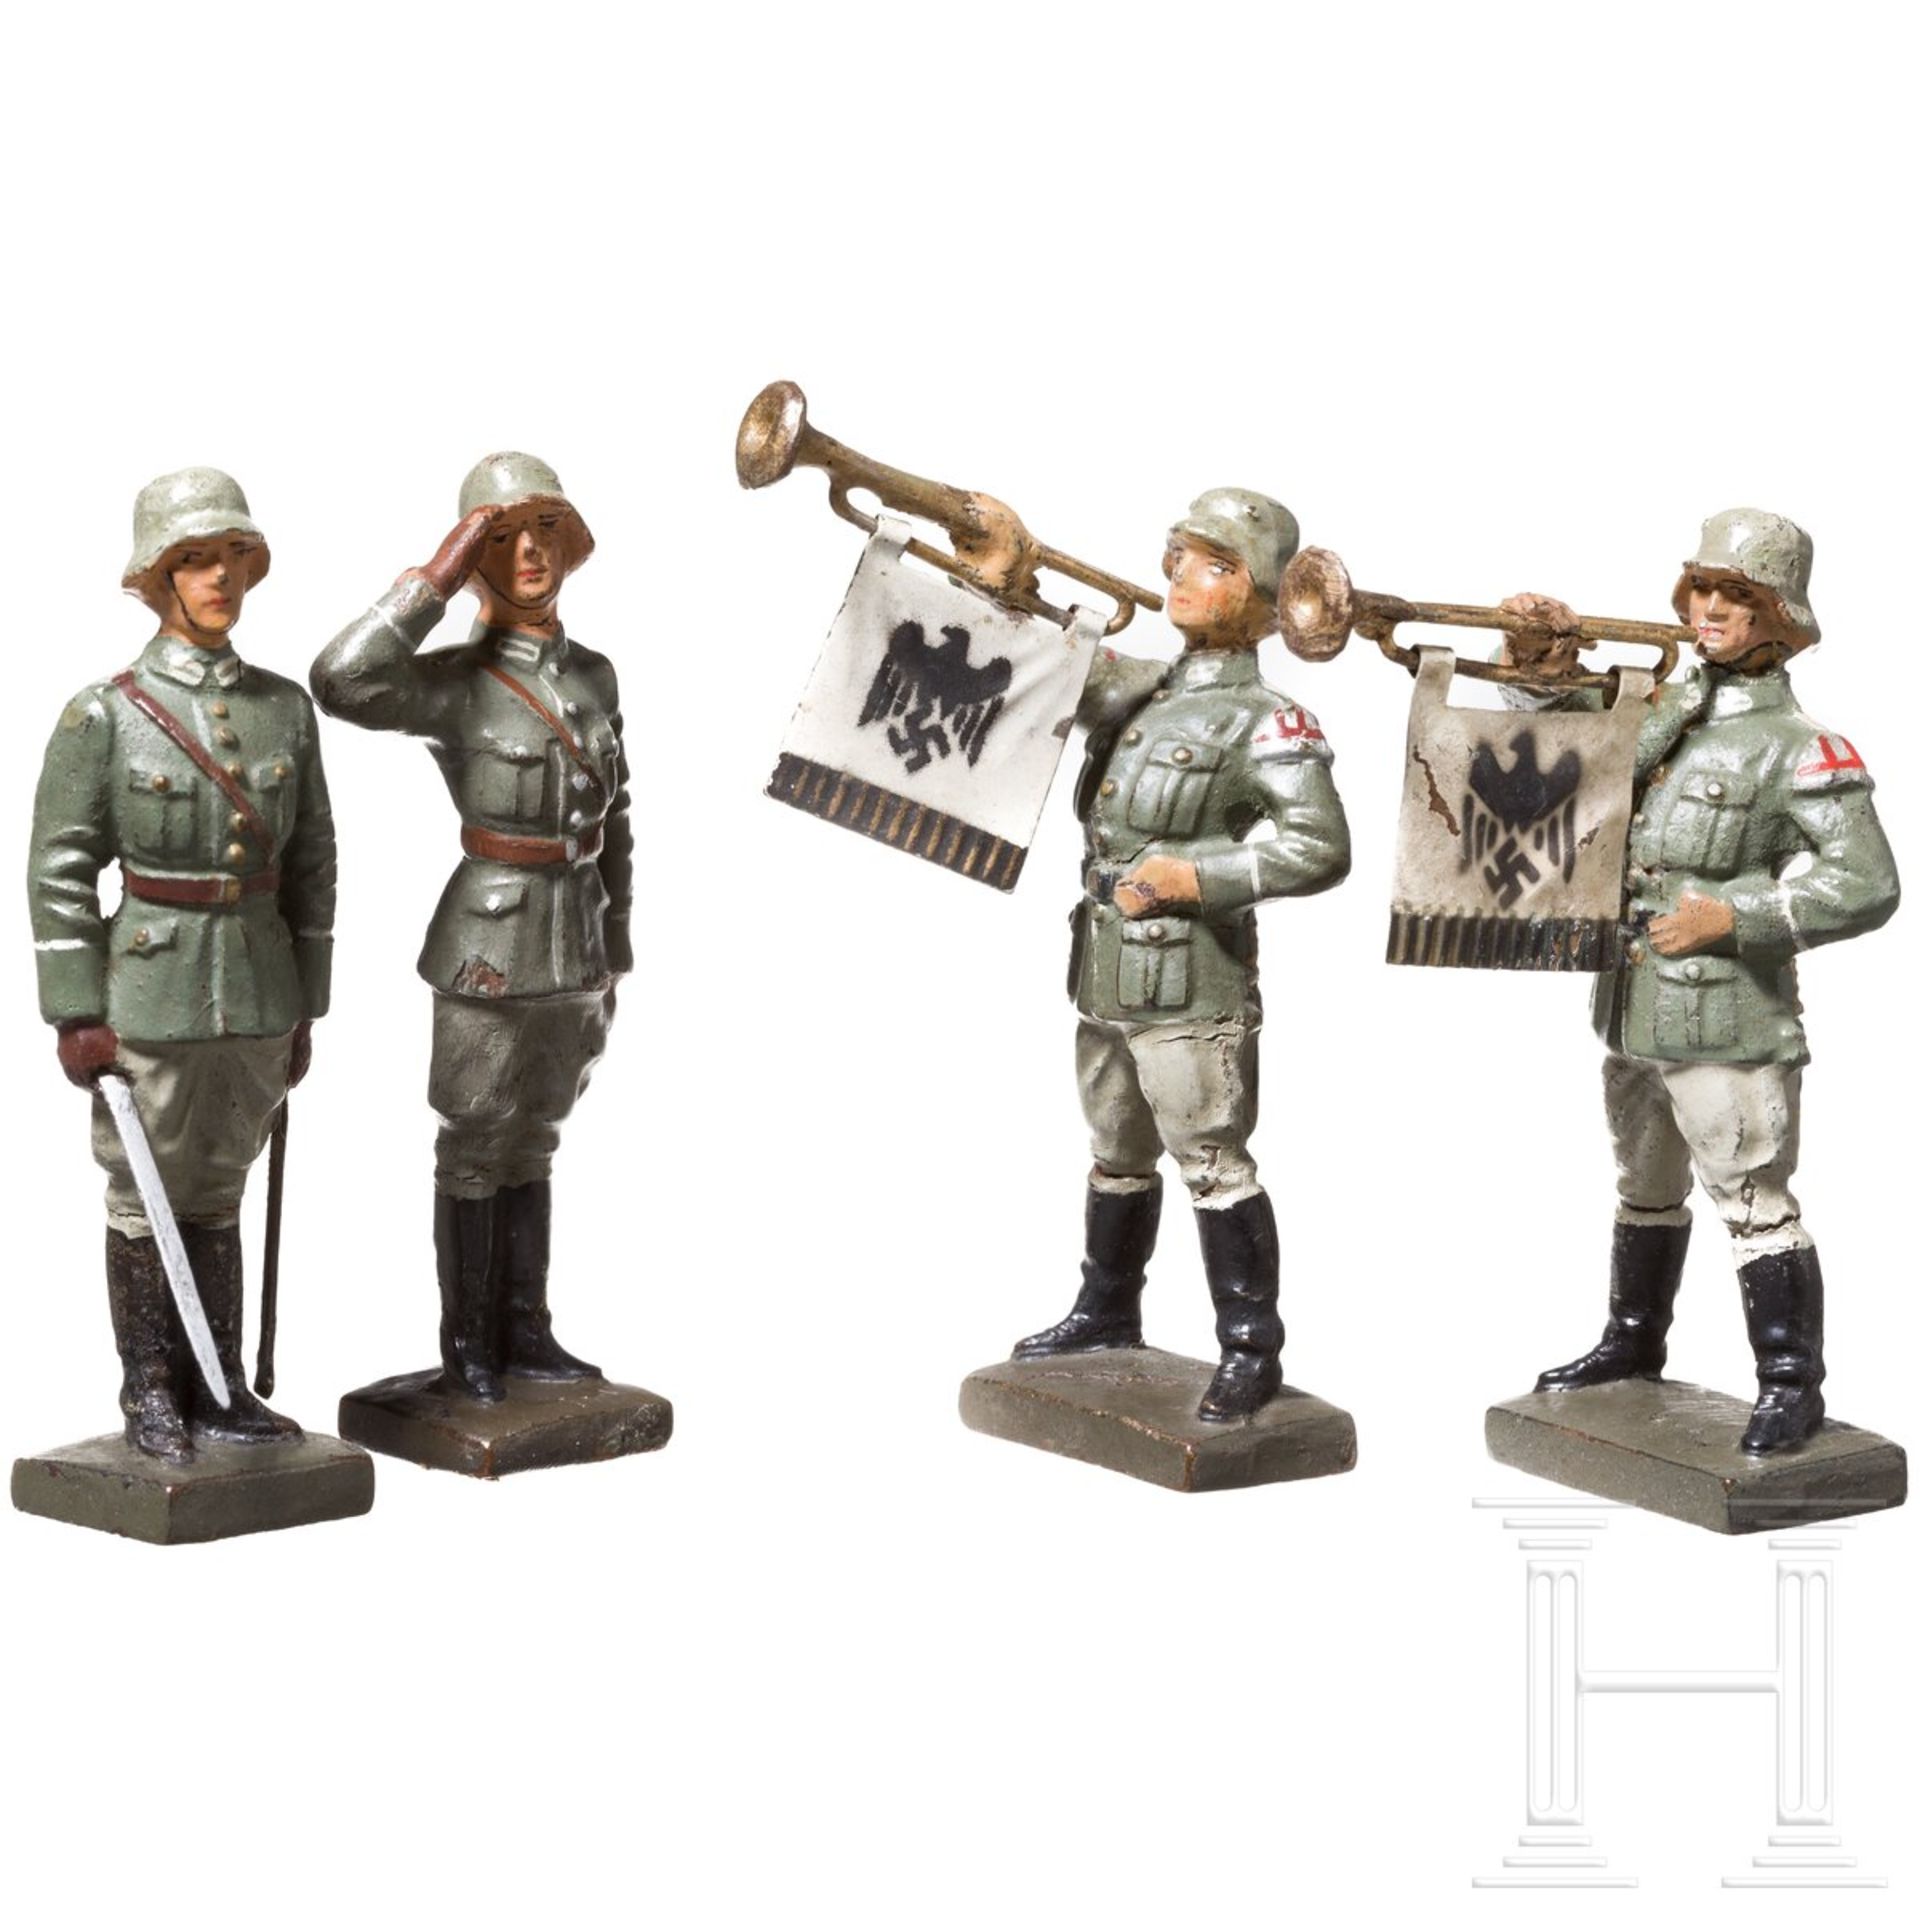 Vier stillgestandene Lineol Soldaten des Heeres mit Fanfarenbläsern